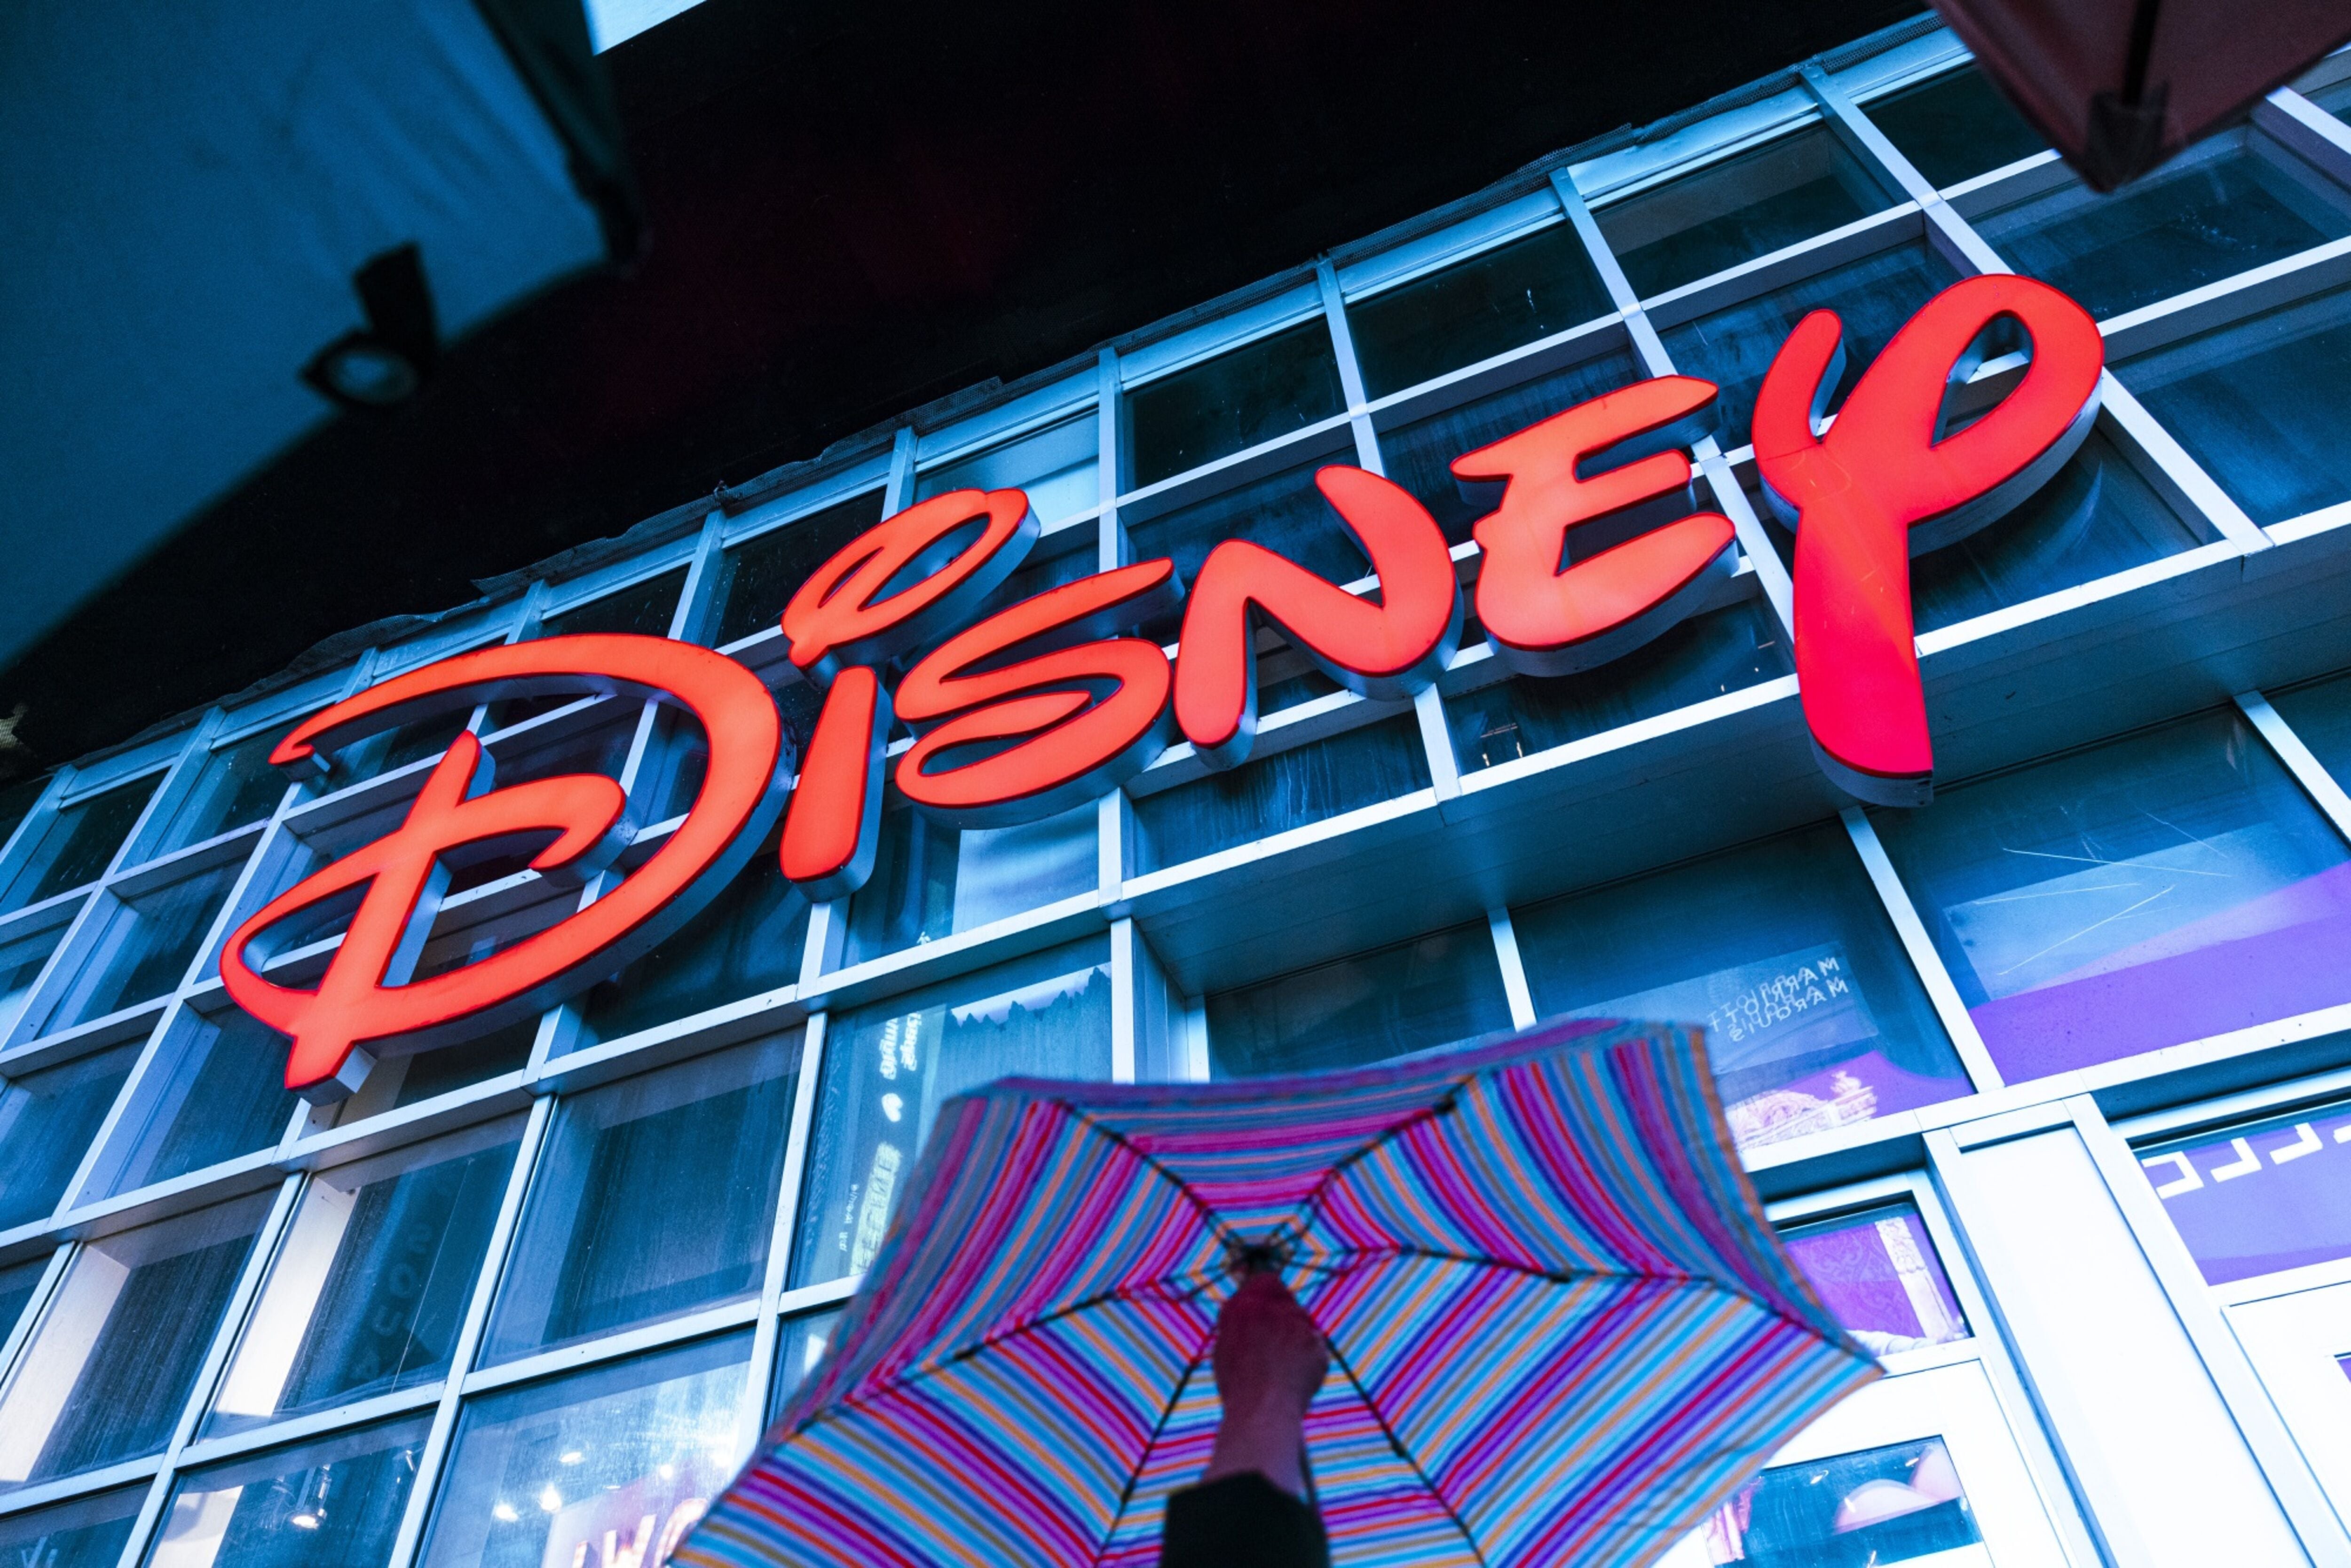 Disney informó que fue víctima de un hackeo, donde más de un TB de información está comprometida.